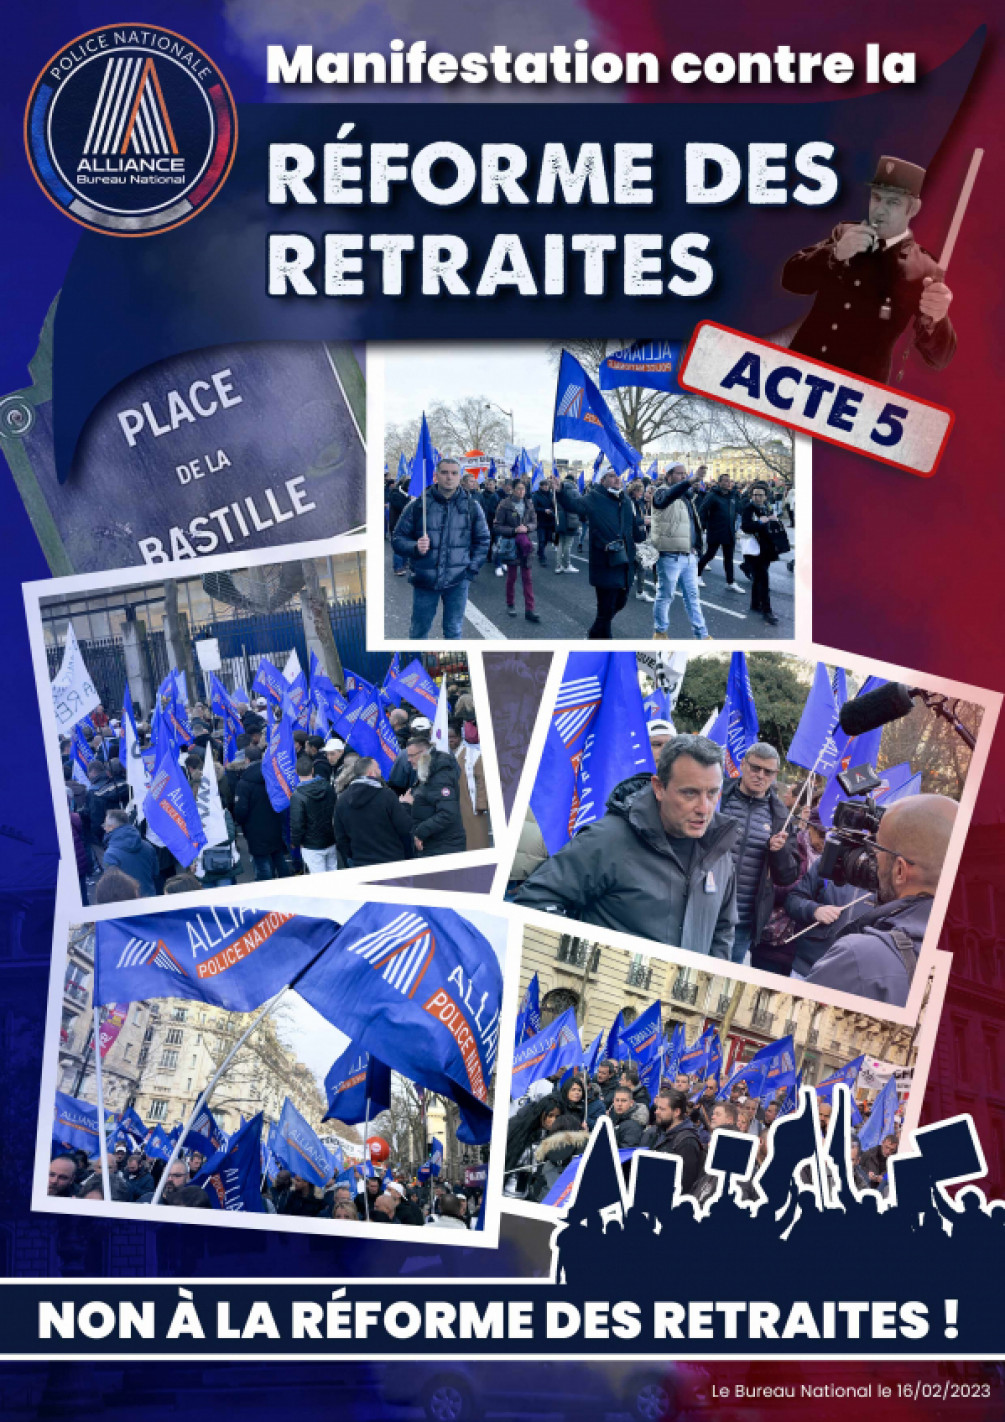 Manifestation contre la réforme des retraites Acte 5 Bastille